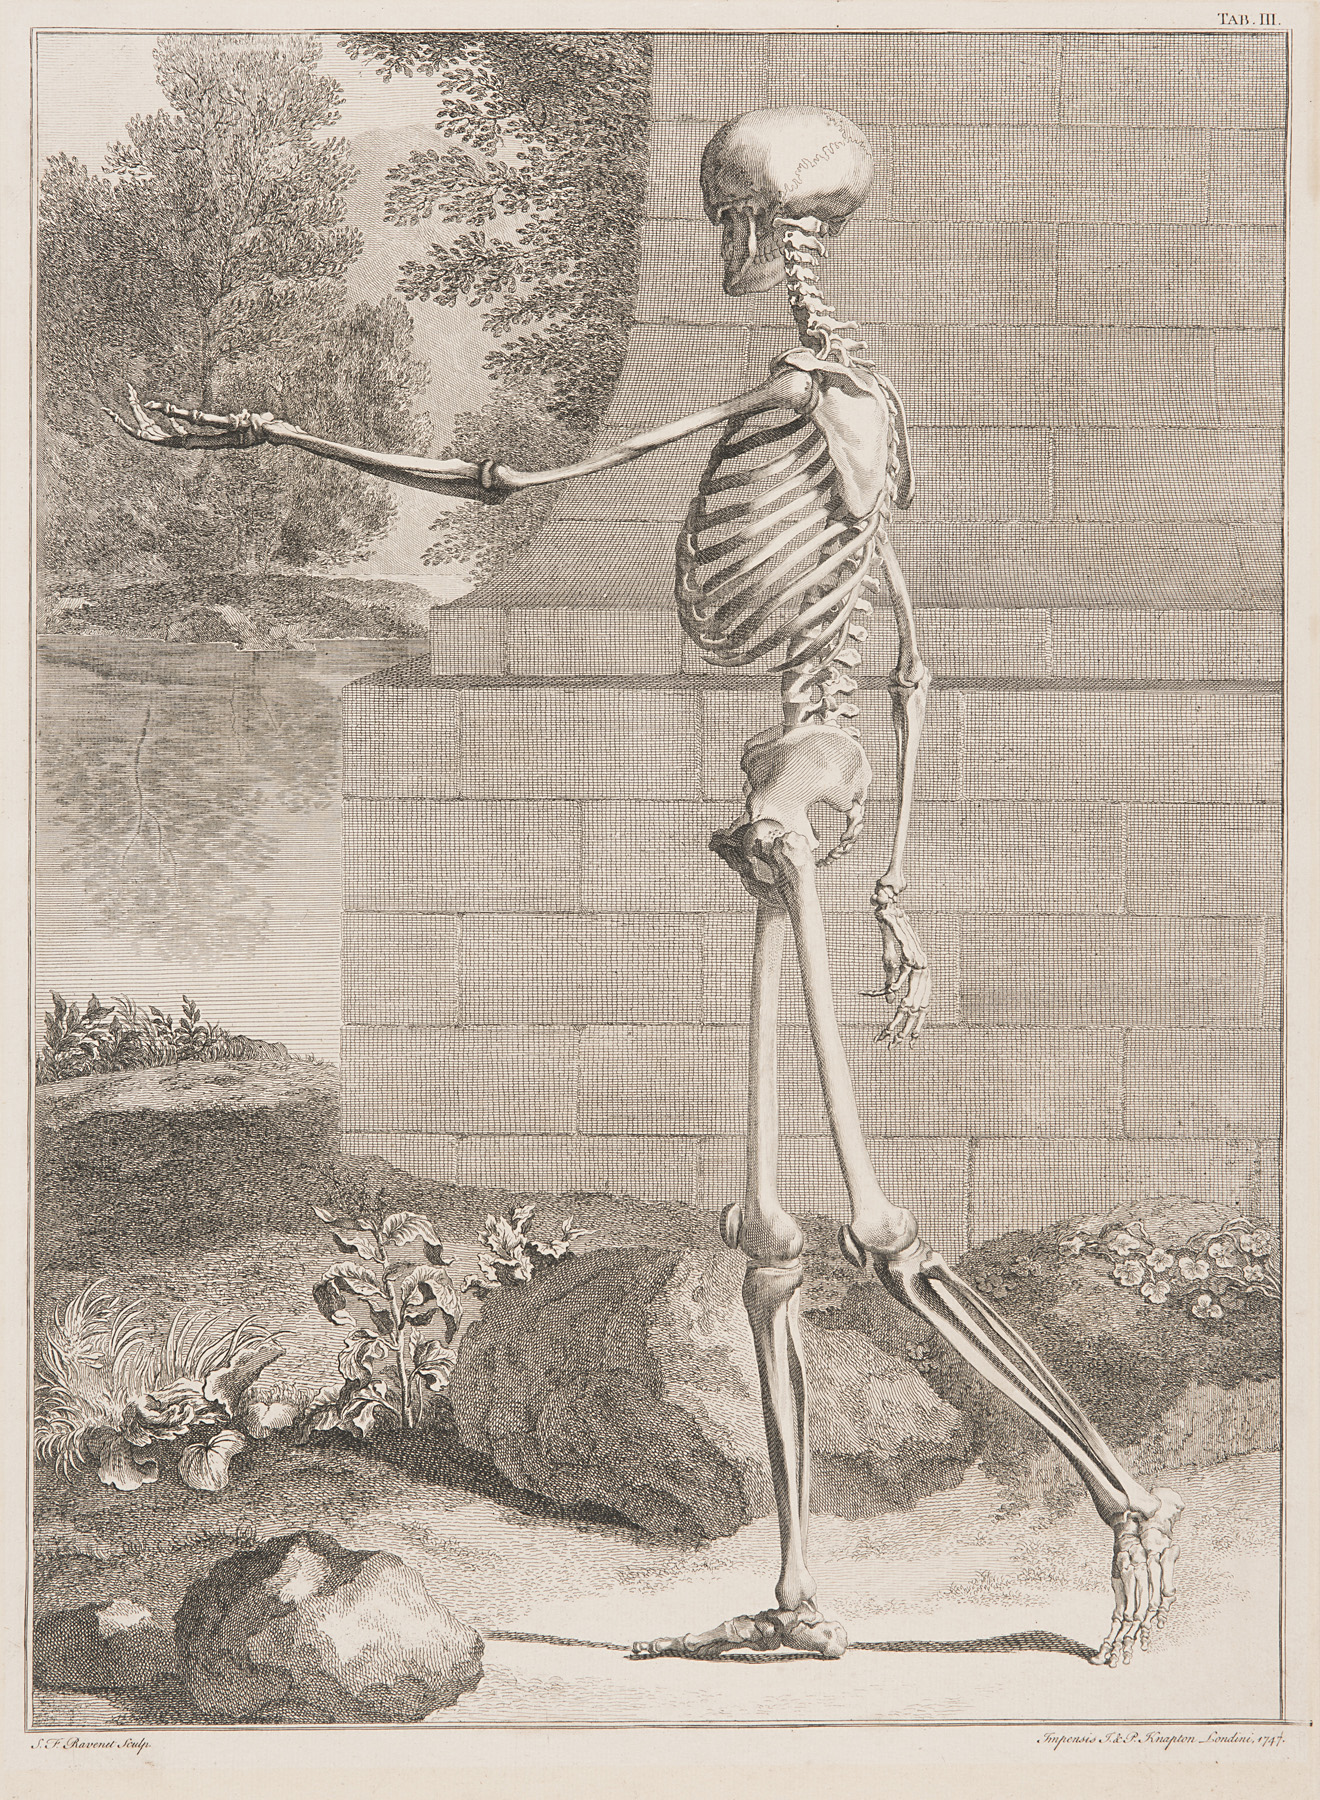 Tab. III The Skeleton, Side View